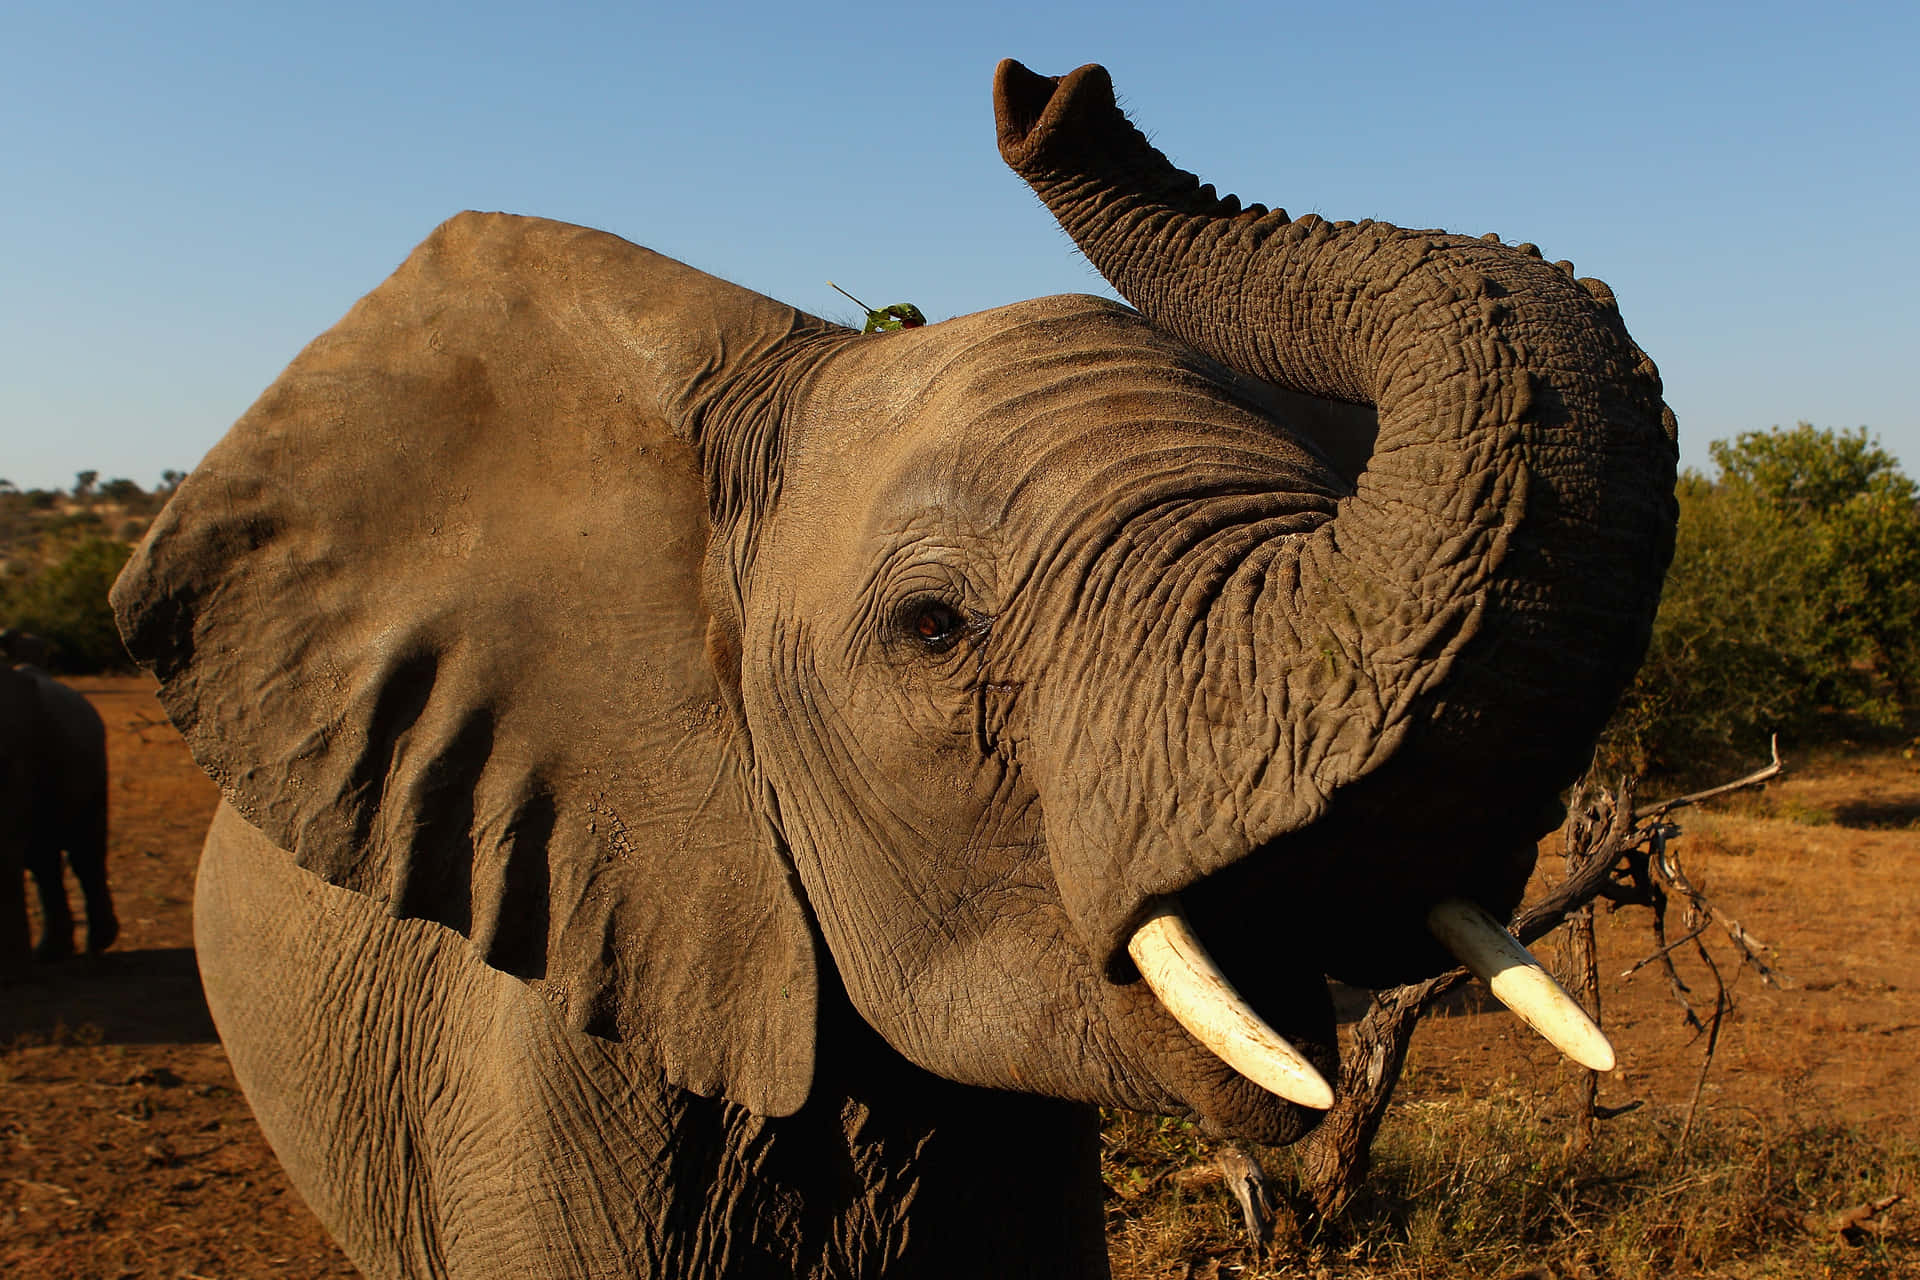 A majestic Elephants struts across a sandy landscape